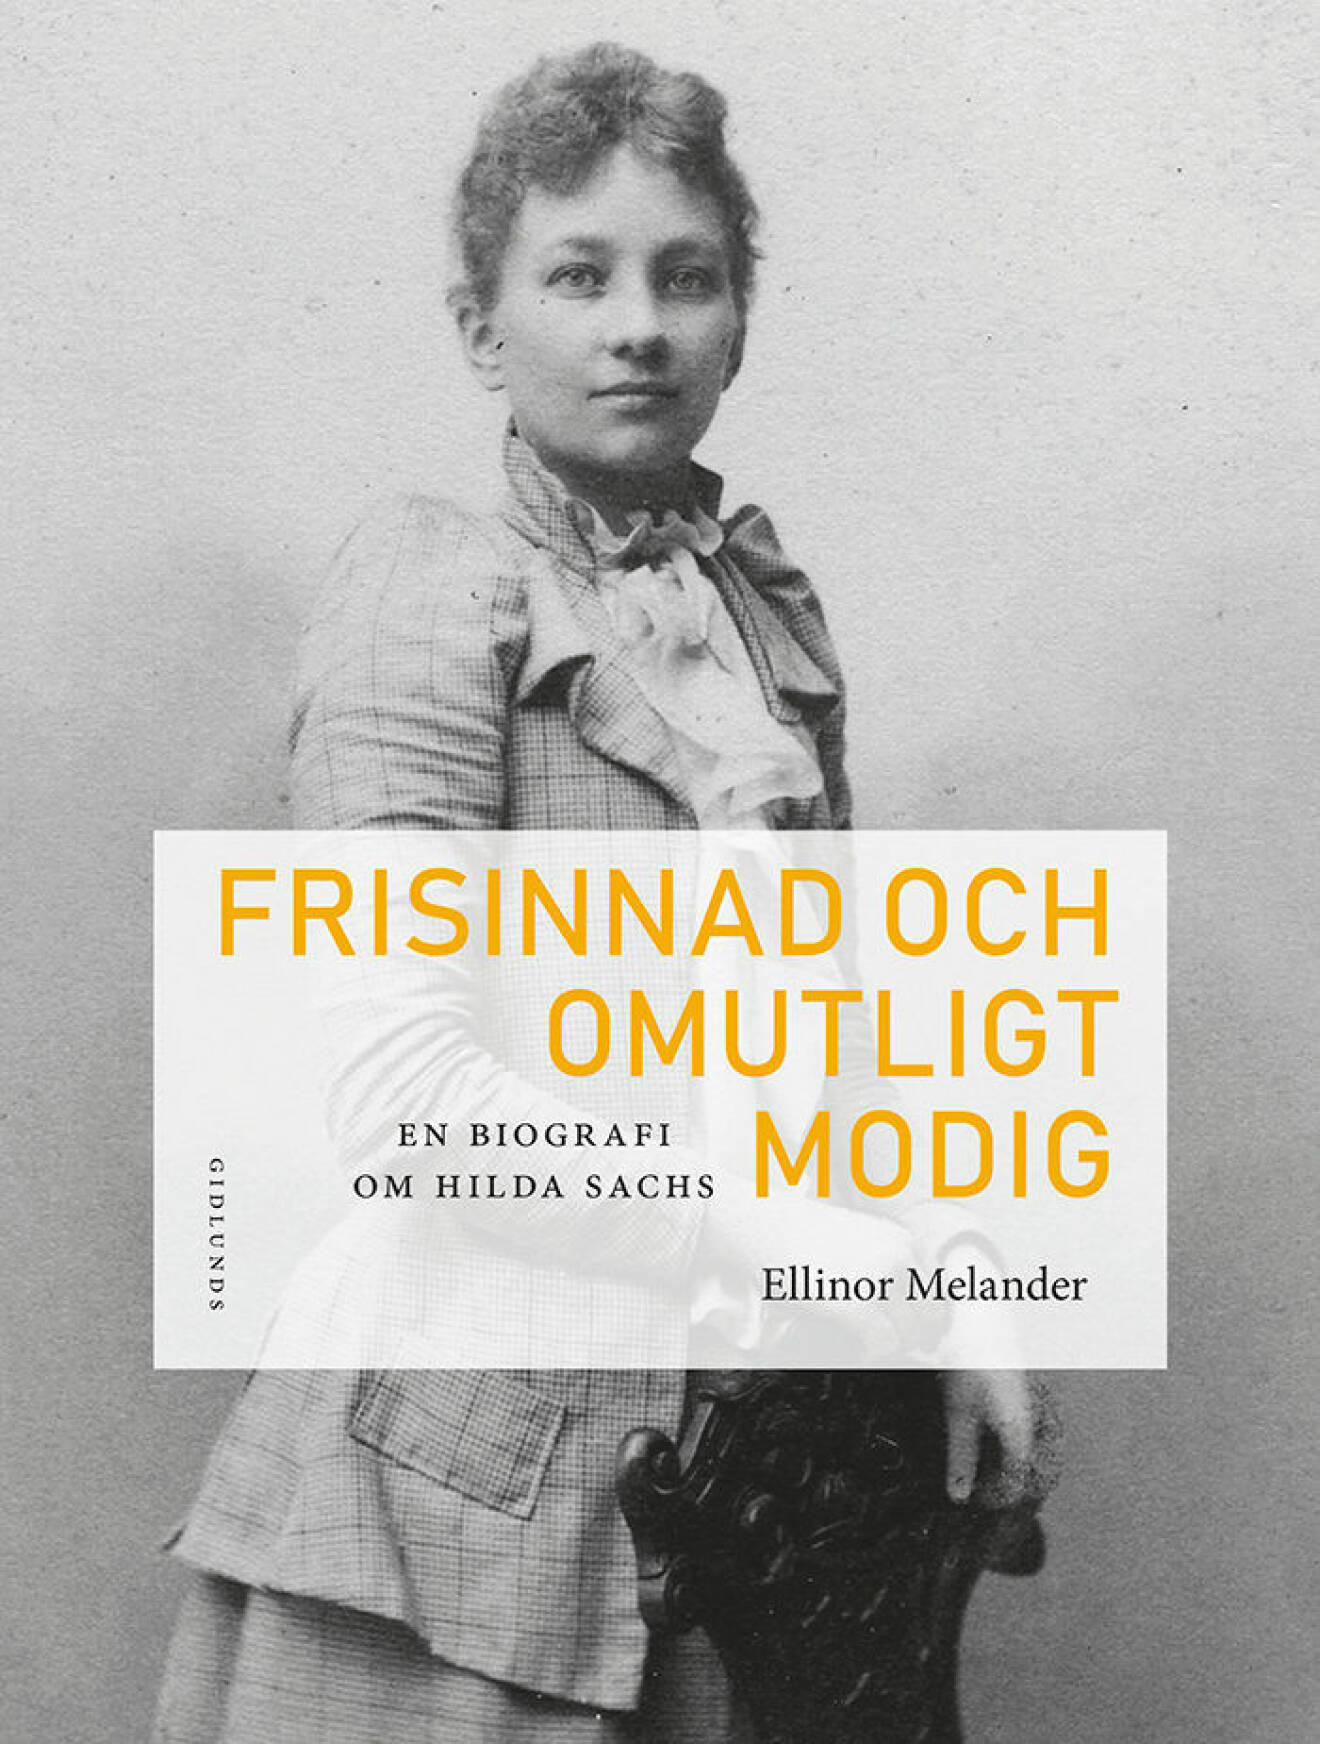 En biografi om Hilda Sachs Frisinnad och omutligt modig av Ellinor Melander